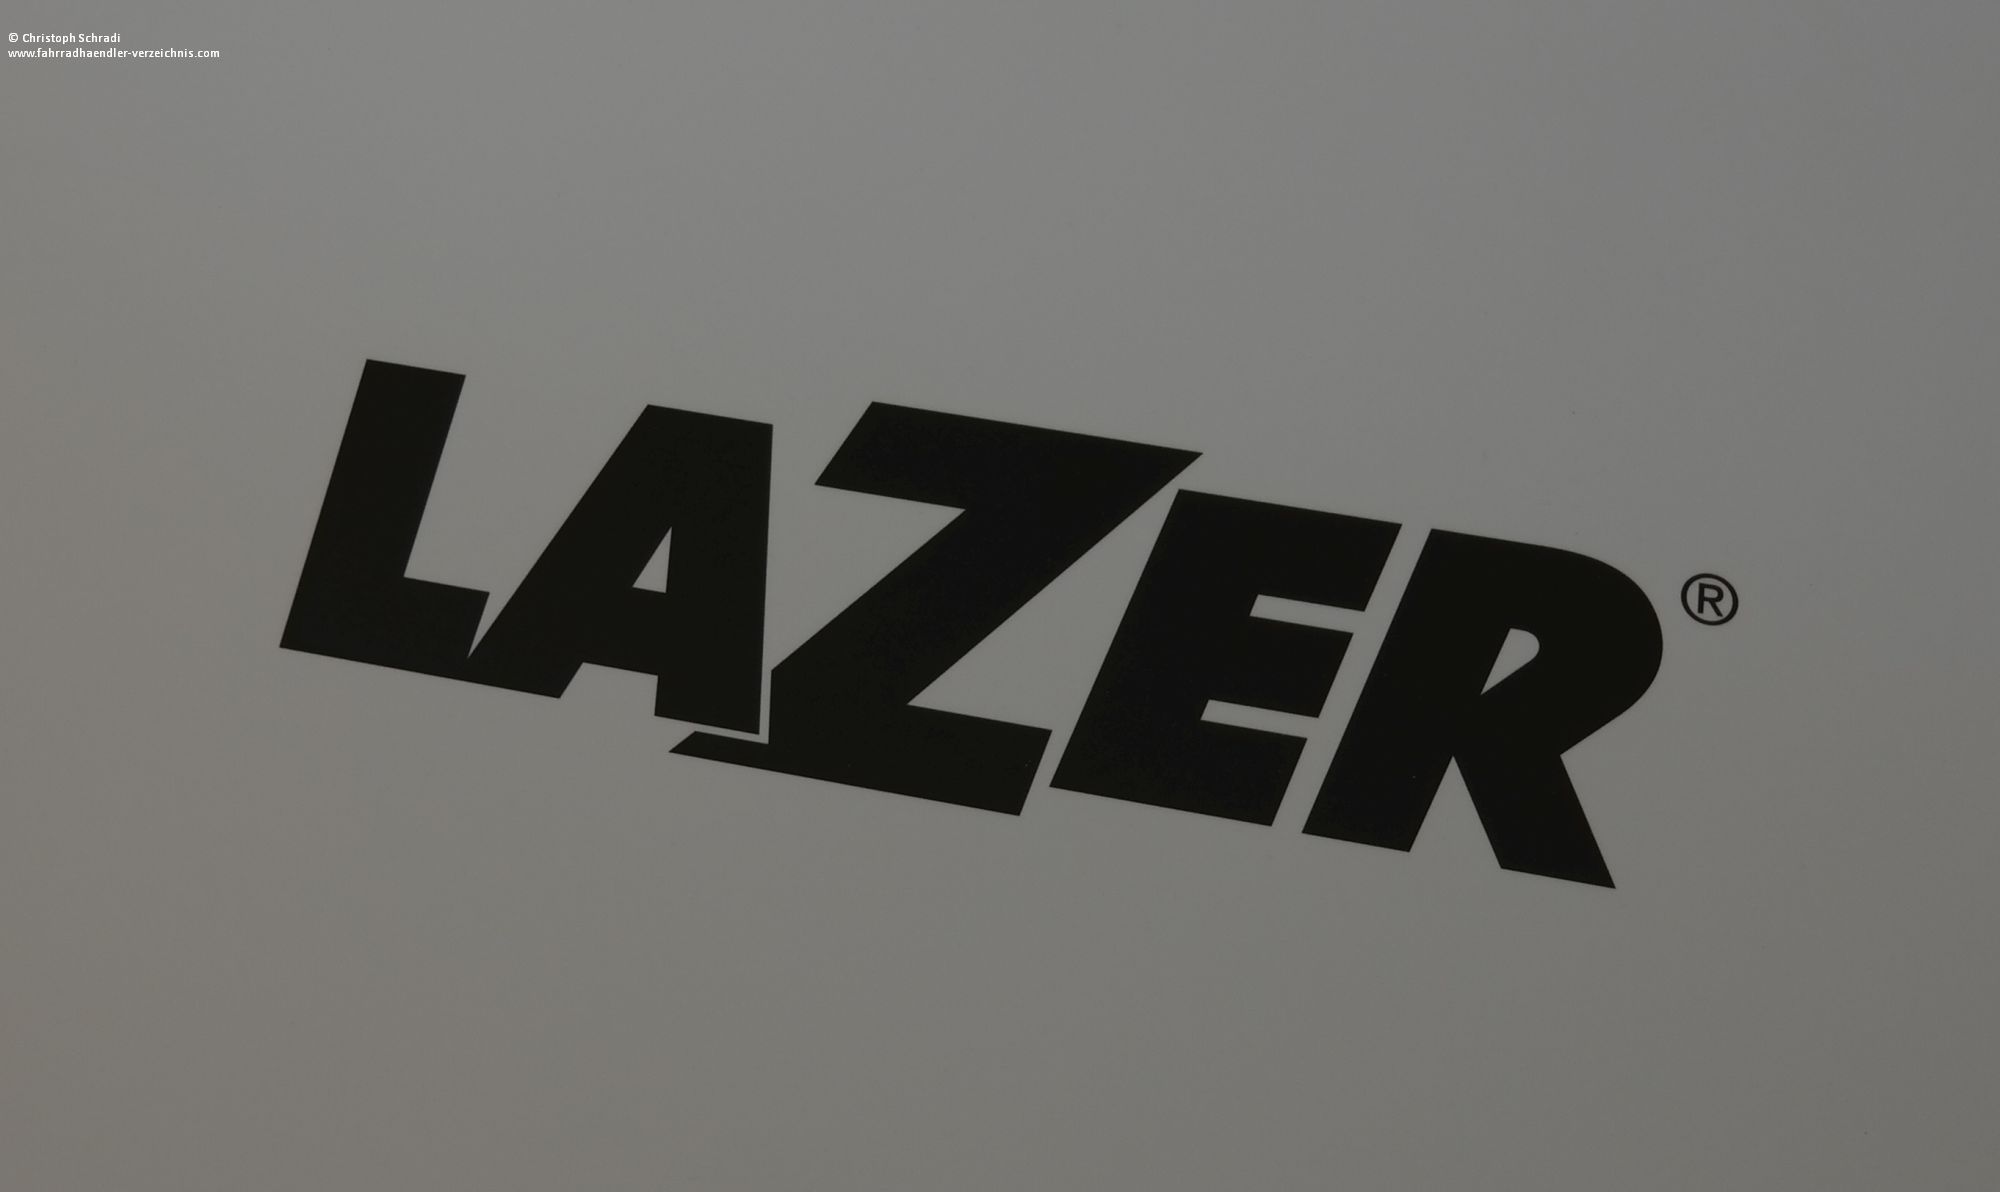 Lazer ist ein belgischer Hersteller von Fahrradhelmen und laut eigener Aussage der älteste Hersteller von Helmen der Welt